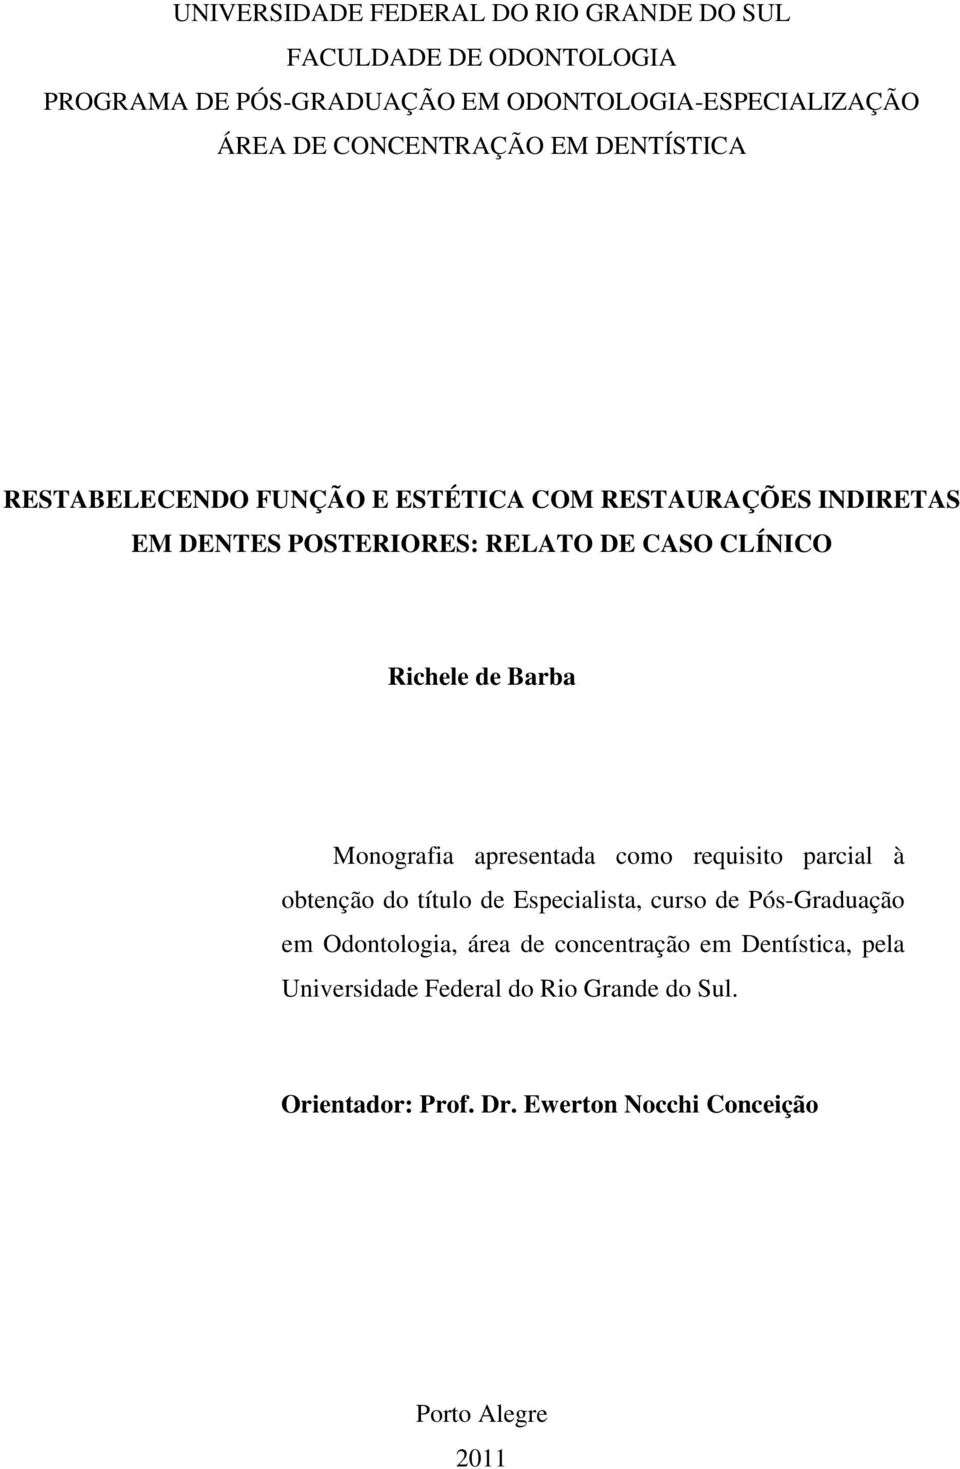 Richele de Barba Monografia apresentada como requisito parcial à obtenção do título de Especialista, curso de Pós-Graduação em